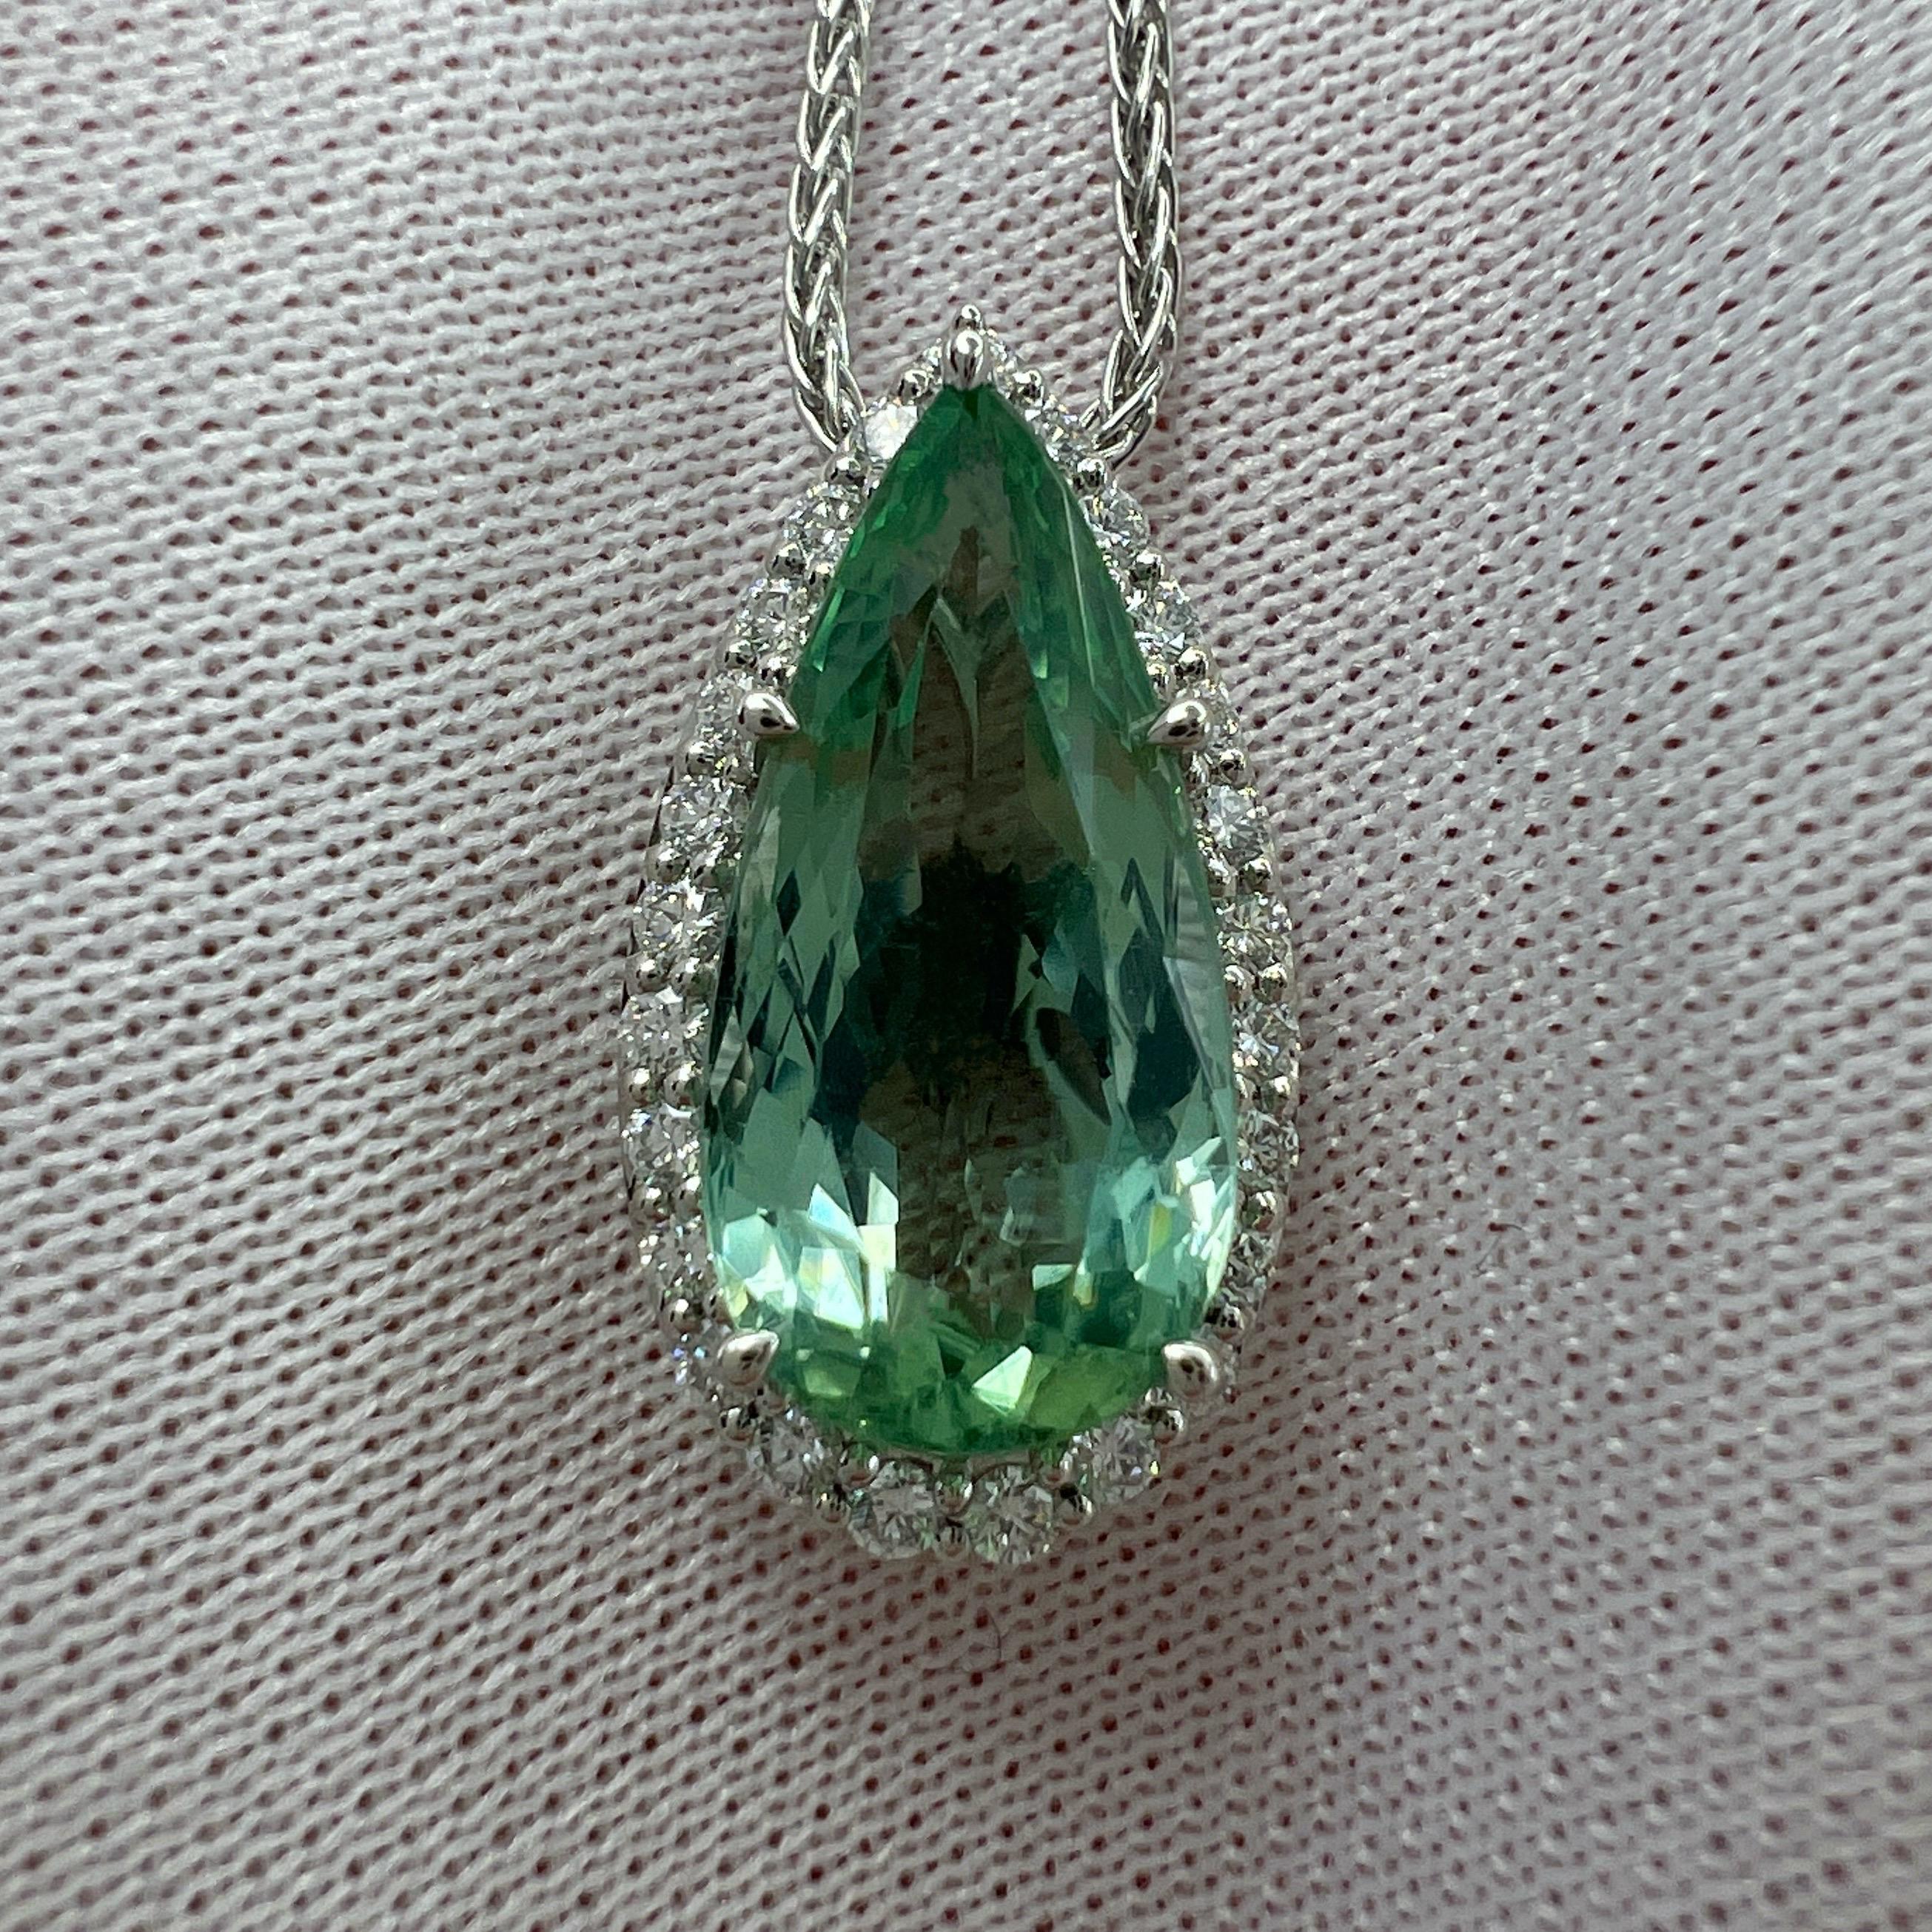 Collier pendentif halo en platine avec tourmaline verte vive taillée en poire et diamant, Nature.

Tourmaline de 3,72 carats d'une superbe couleur vert menthe et d'une excellente clarté, pierre très propre. 
Il présente également une excellente